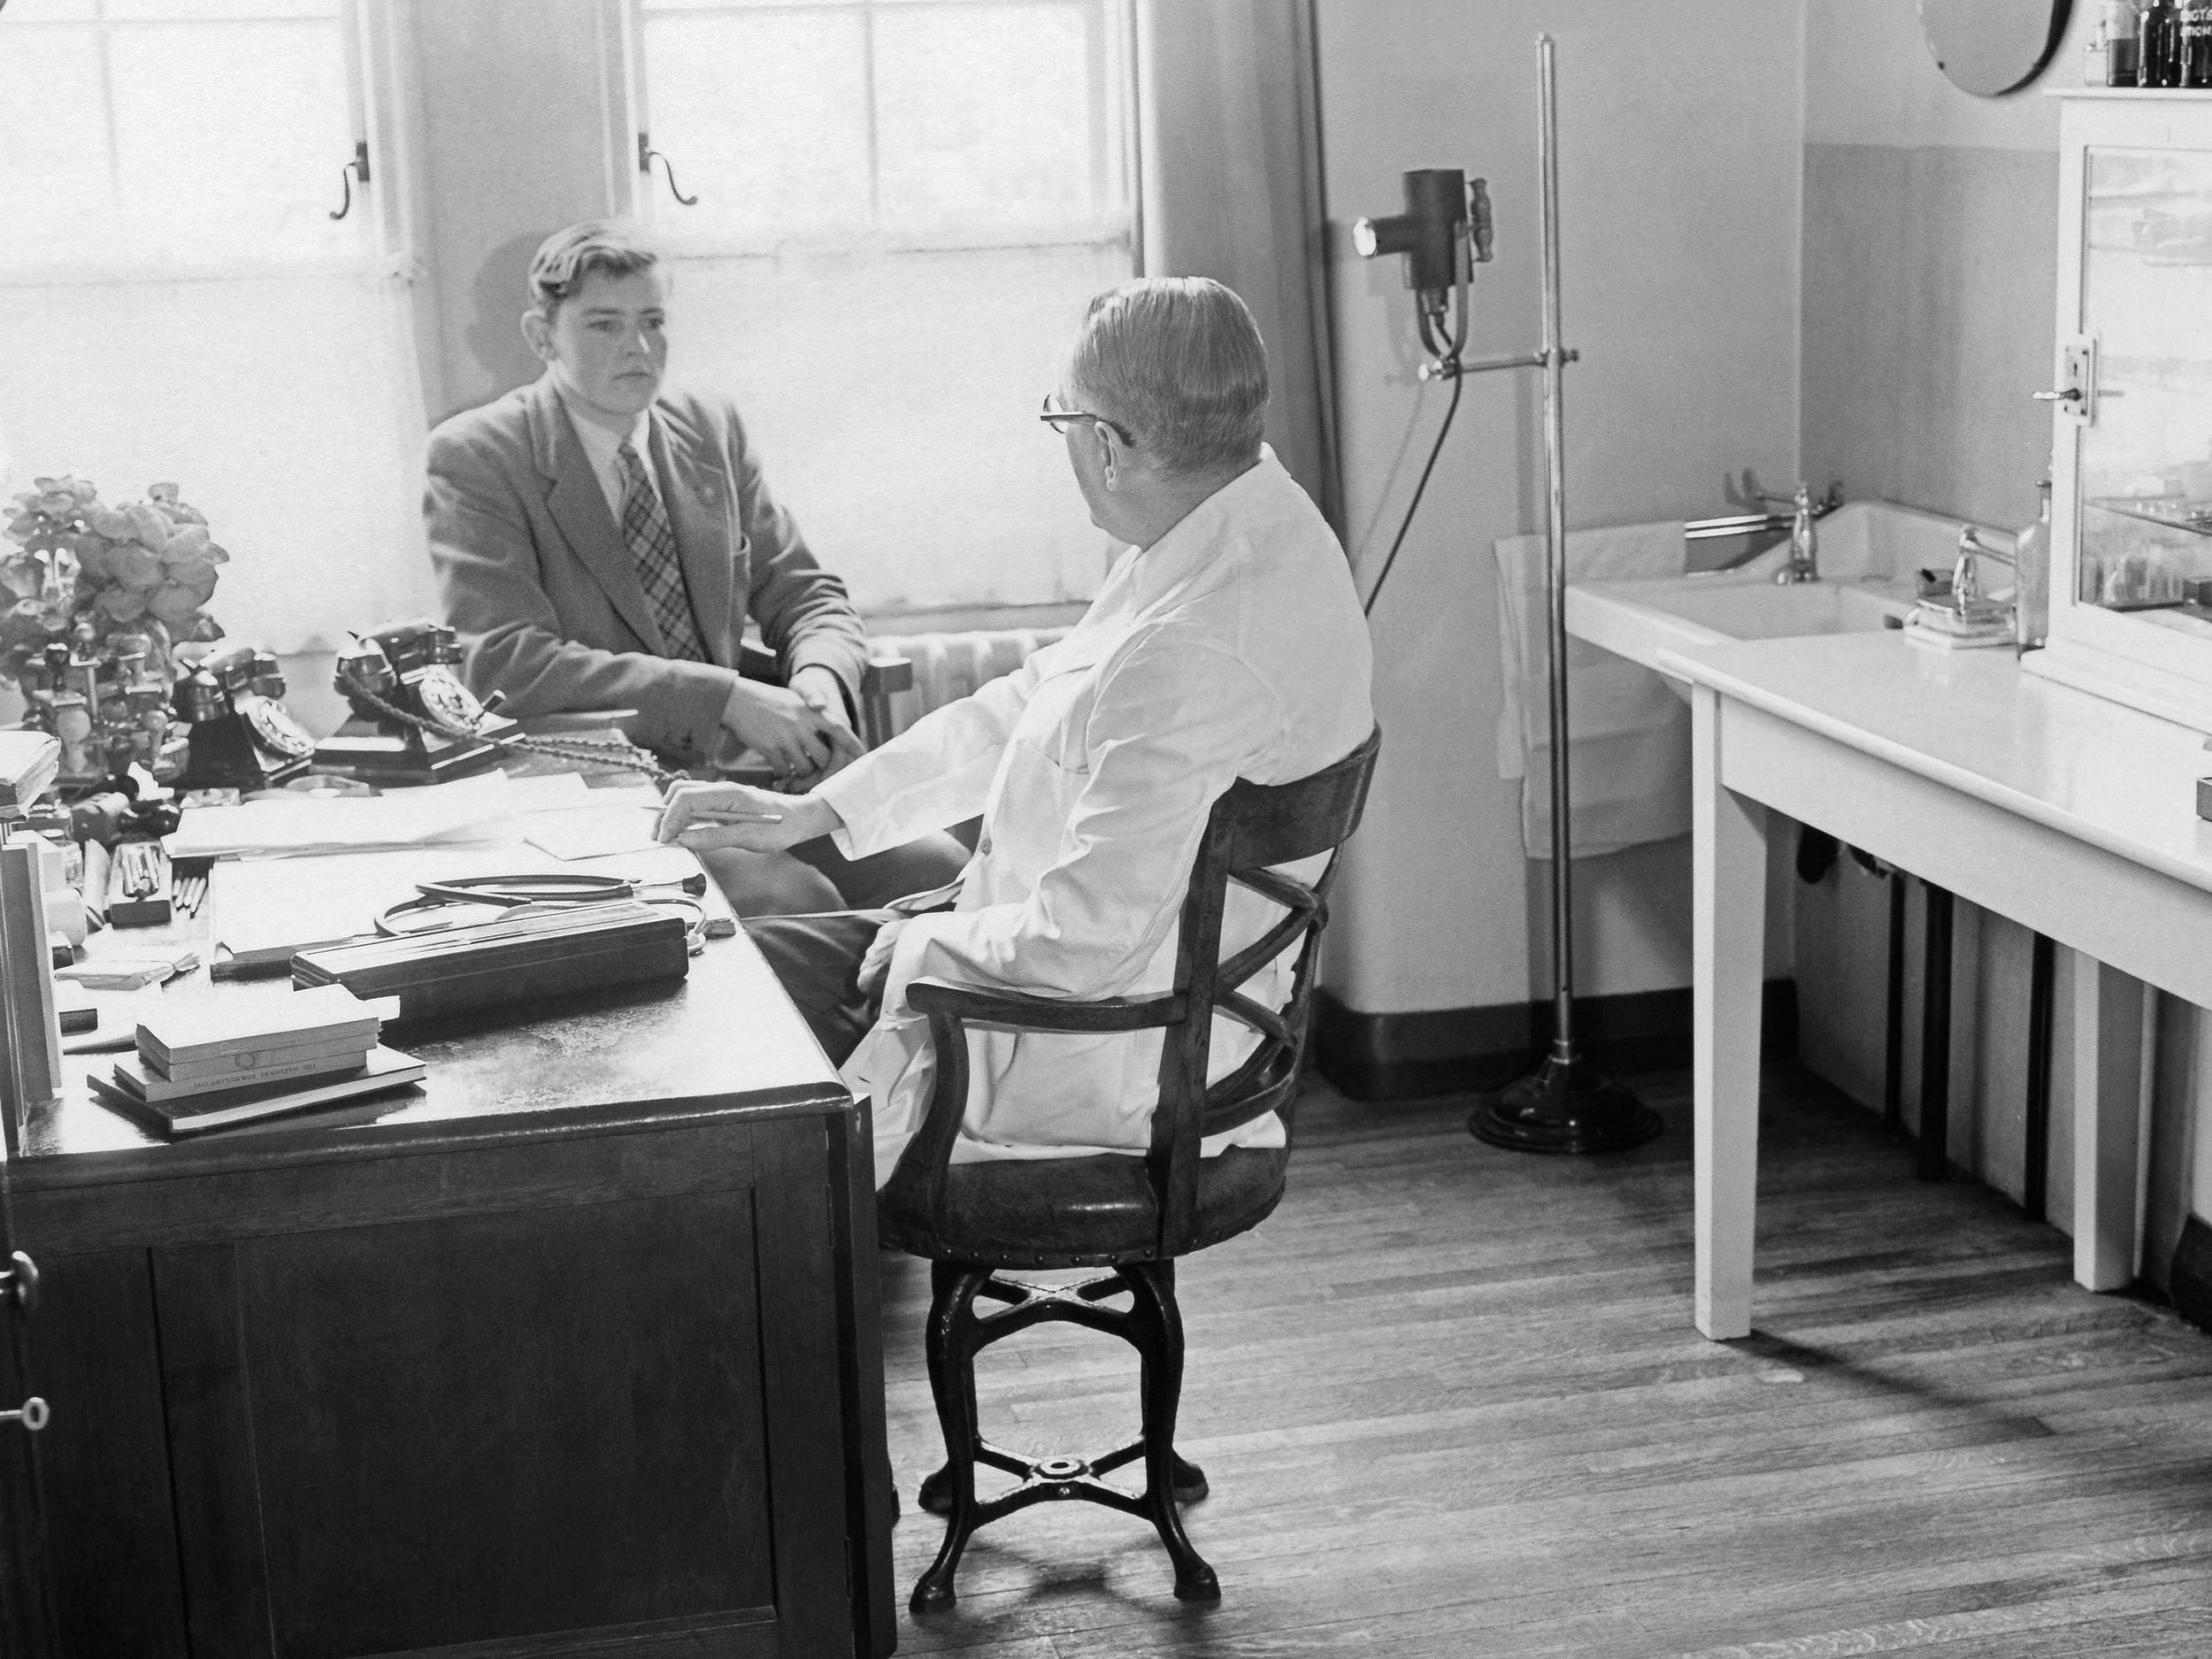 Fotografie, schwarz-weiß, von 1955: Das Foto zeigt einen Patienten und einen Arzt in einem Behandlungszimmer an einem Schreibtisch sitzend. Den Patienten sieht man von vorne. Der Arzt wird in einer Dreiviertelansicht von hinten gezeigt.     